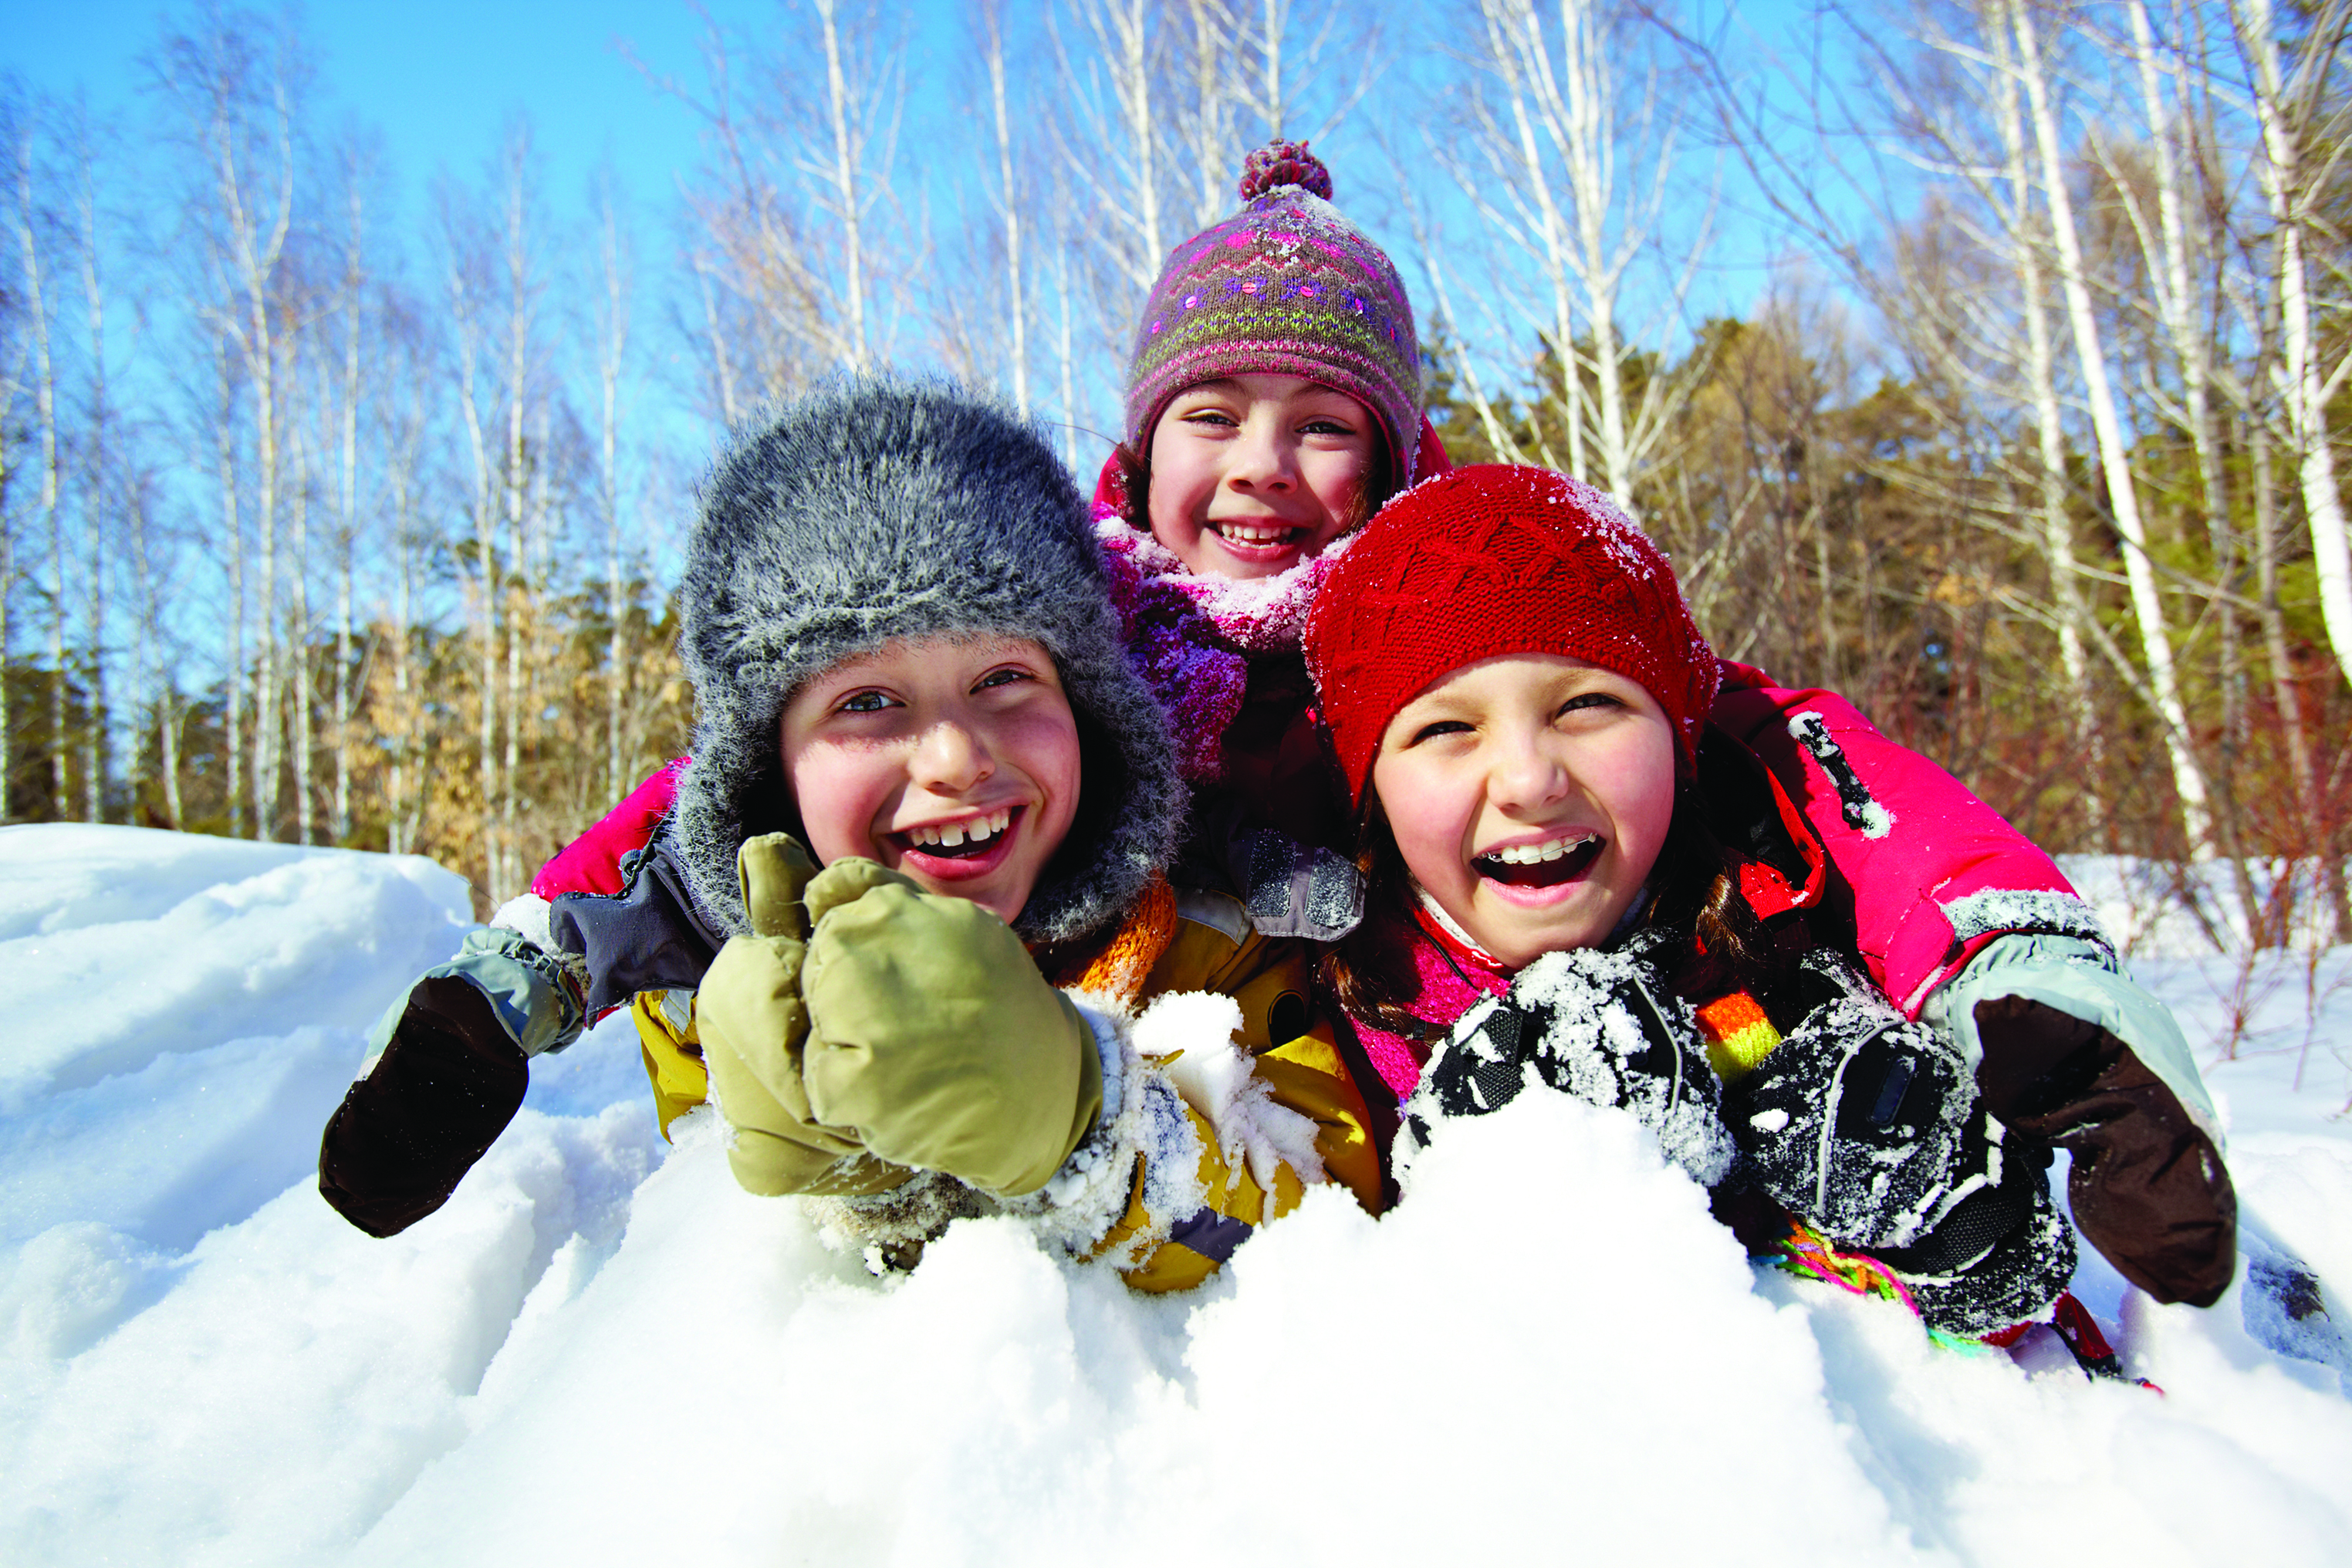 Дети весело провели время. Дети зимой. Зимний лагерь. Зимний лагерь для детей. Счастливые дети зимой.